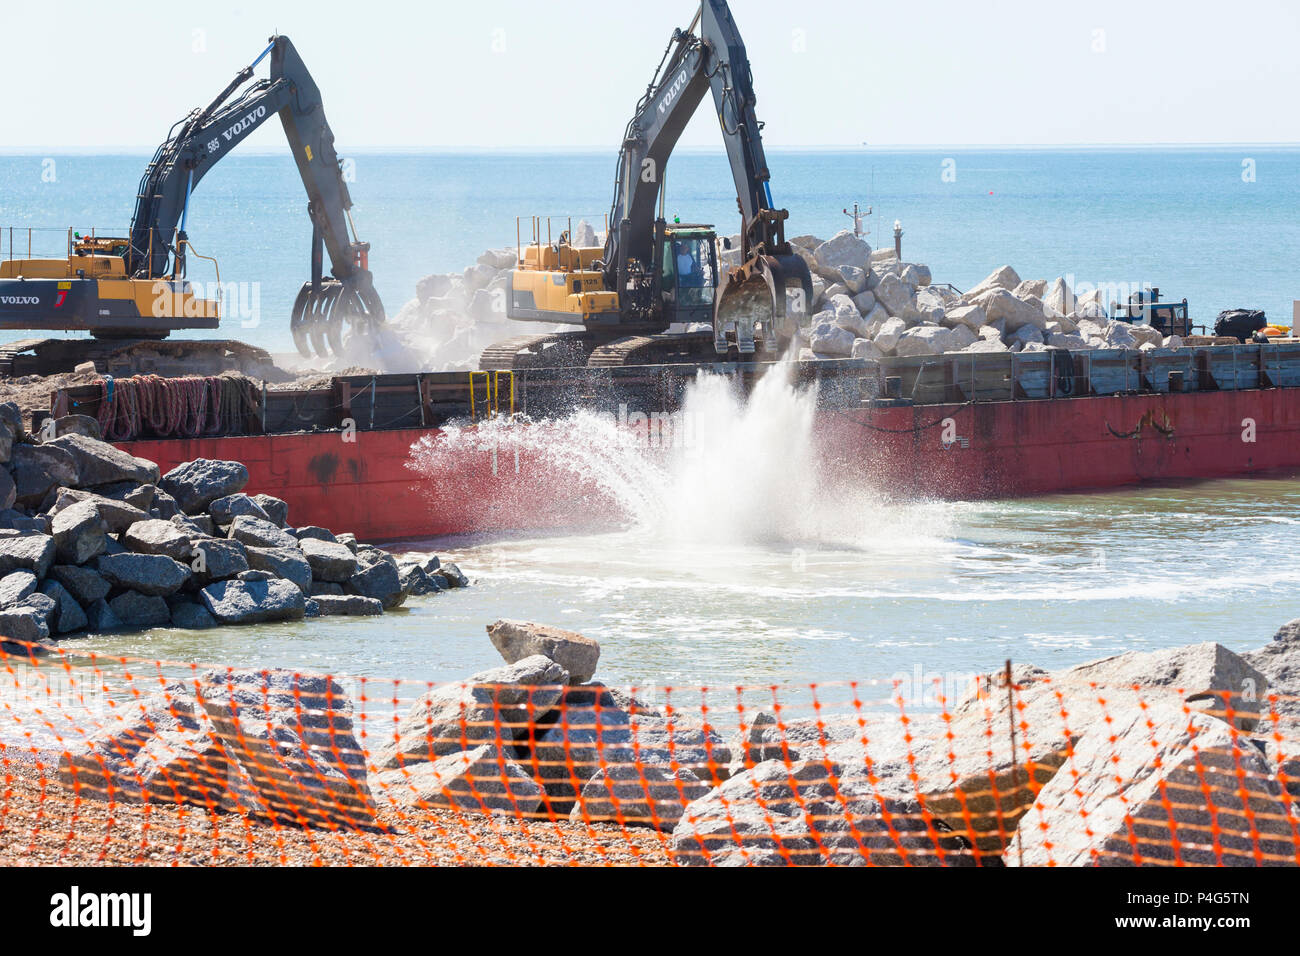 Hastings, East Sussex, Großbritannien. Juni 2018. Der Bau von zwei neuen Wellenbrecher-Felsgroyns an der Küste ist im Gange, um den Strand an seinem Platz zu halten und die Meeresmauer zu schützen. Der Auftrag für die Arbeiten wurde von J. T. Mackley Ltd, einem erfahrenen Bauunternehmer an der Küste, gewonnen. 5,000 Tonnen norwegisches Granitgestein werden auf dem Seeweg geliefert, es wird erwartet, dass die Arbeiten je nach Wetterlage 10 Wochen dauern werden. © Paul Lawrenson 2018, Bildnachweis: Paul Lawrenson / Alamy Live News Stockfoto